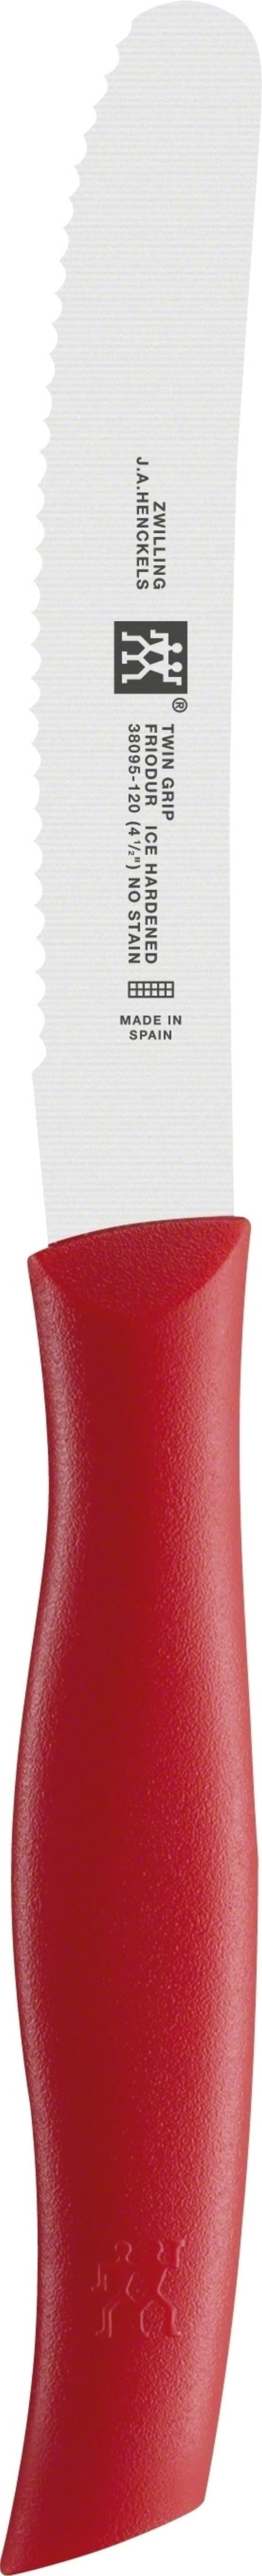 Twin grip présentoir de couteaux universels 20 pces, rouge